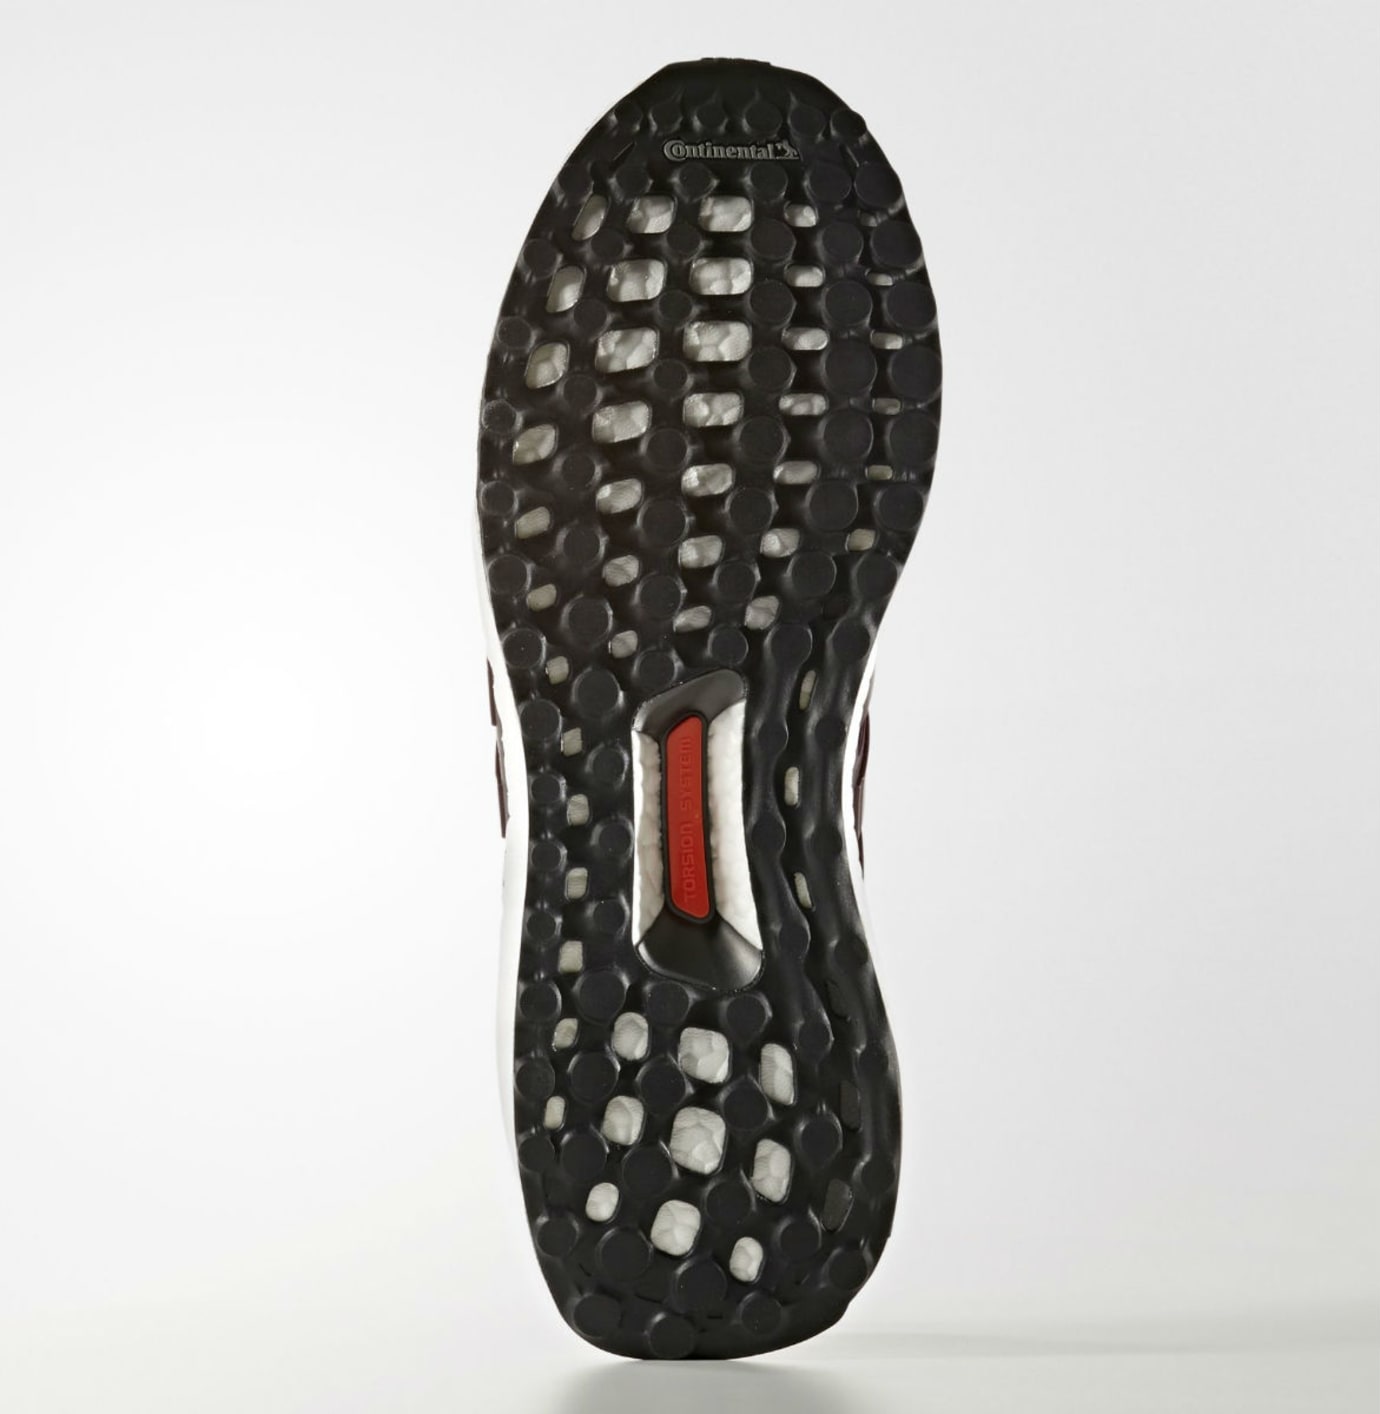 Decorar Redondo sello Adidas Ultra Boost 3.0 Dark Burgundy Release Date S80732 | Sole Collector